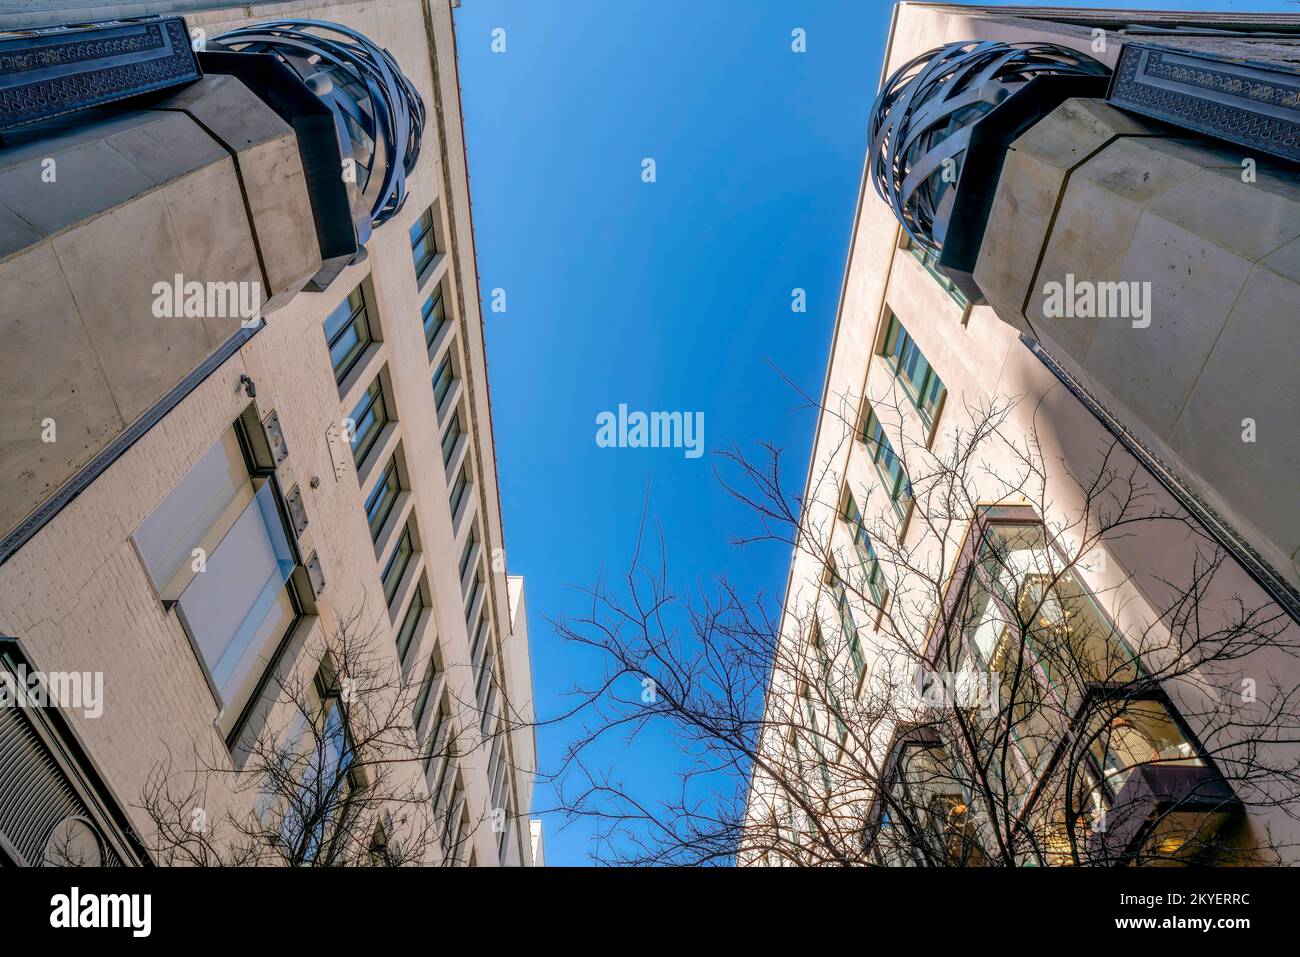 Blick auf die Fassade von Gebäuden mit moderner Architektur vor blauem Himmel. Fassade von Apartments oder Büros in der Innenstadt von San Antonio, Texas, auf einem Stockfoto